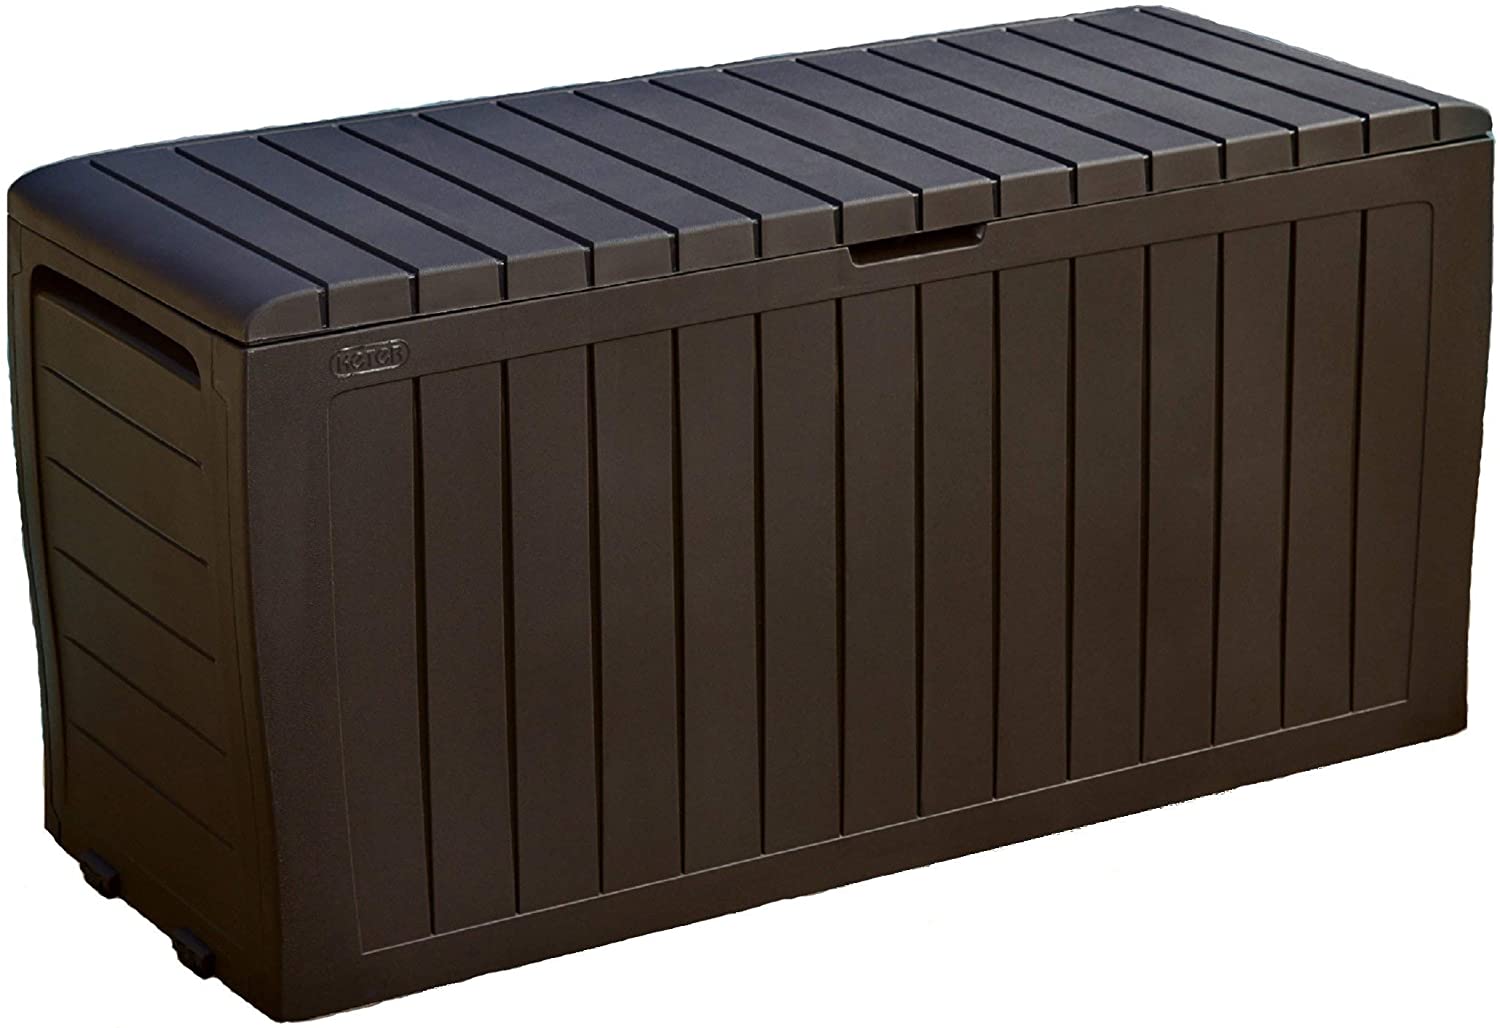 Best Outdoor Storage Box